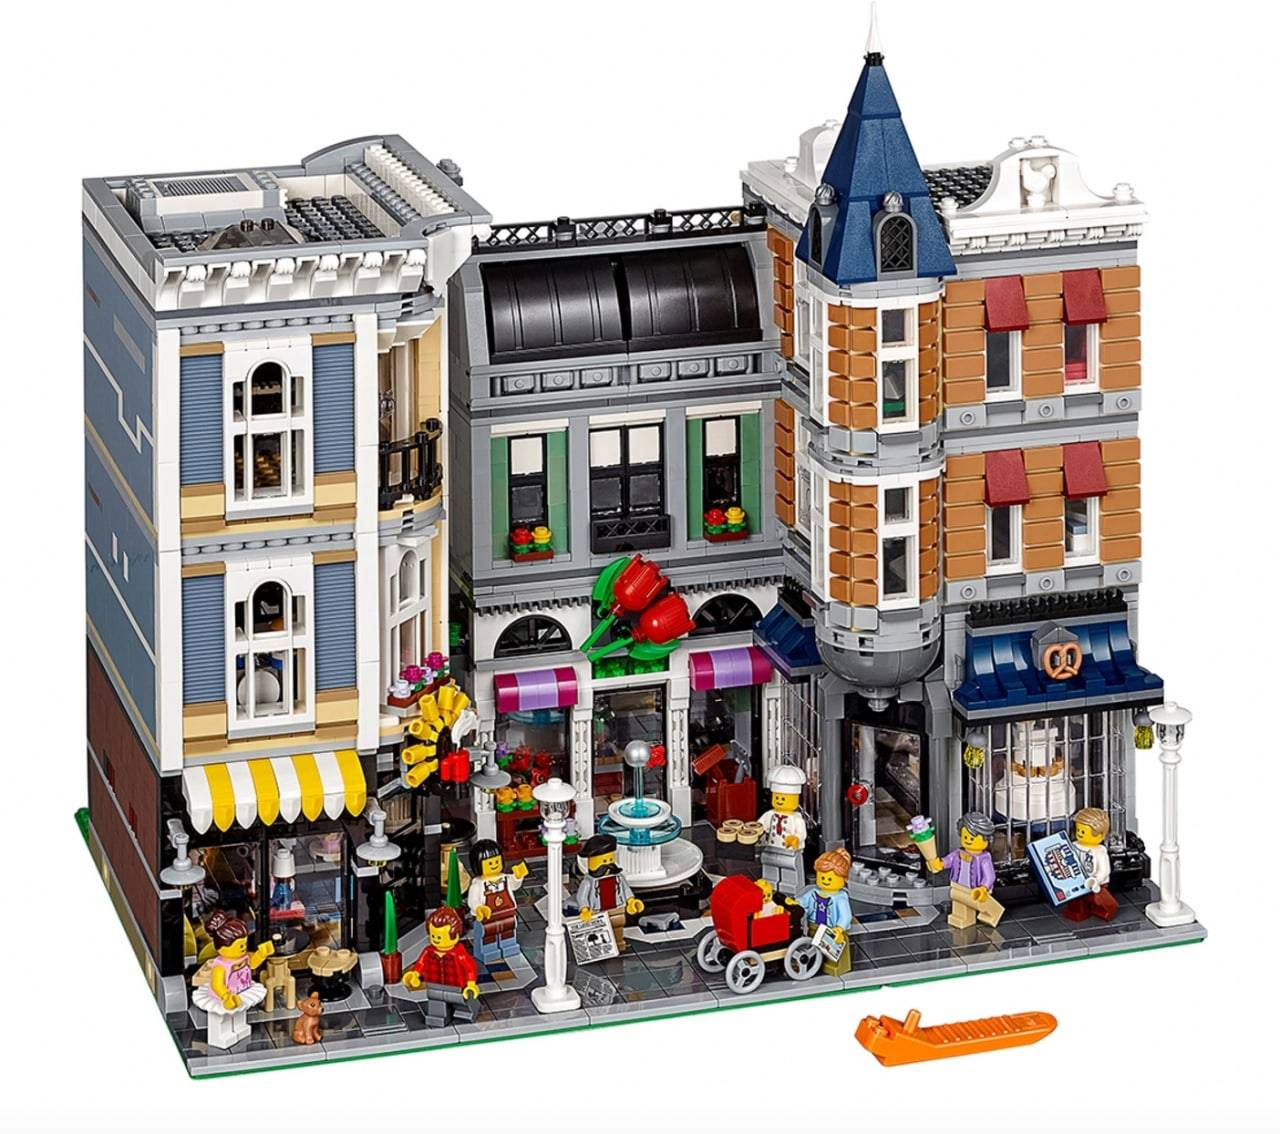 LEGO 10255